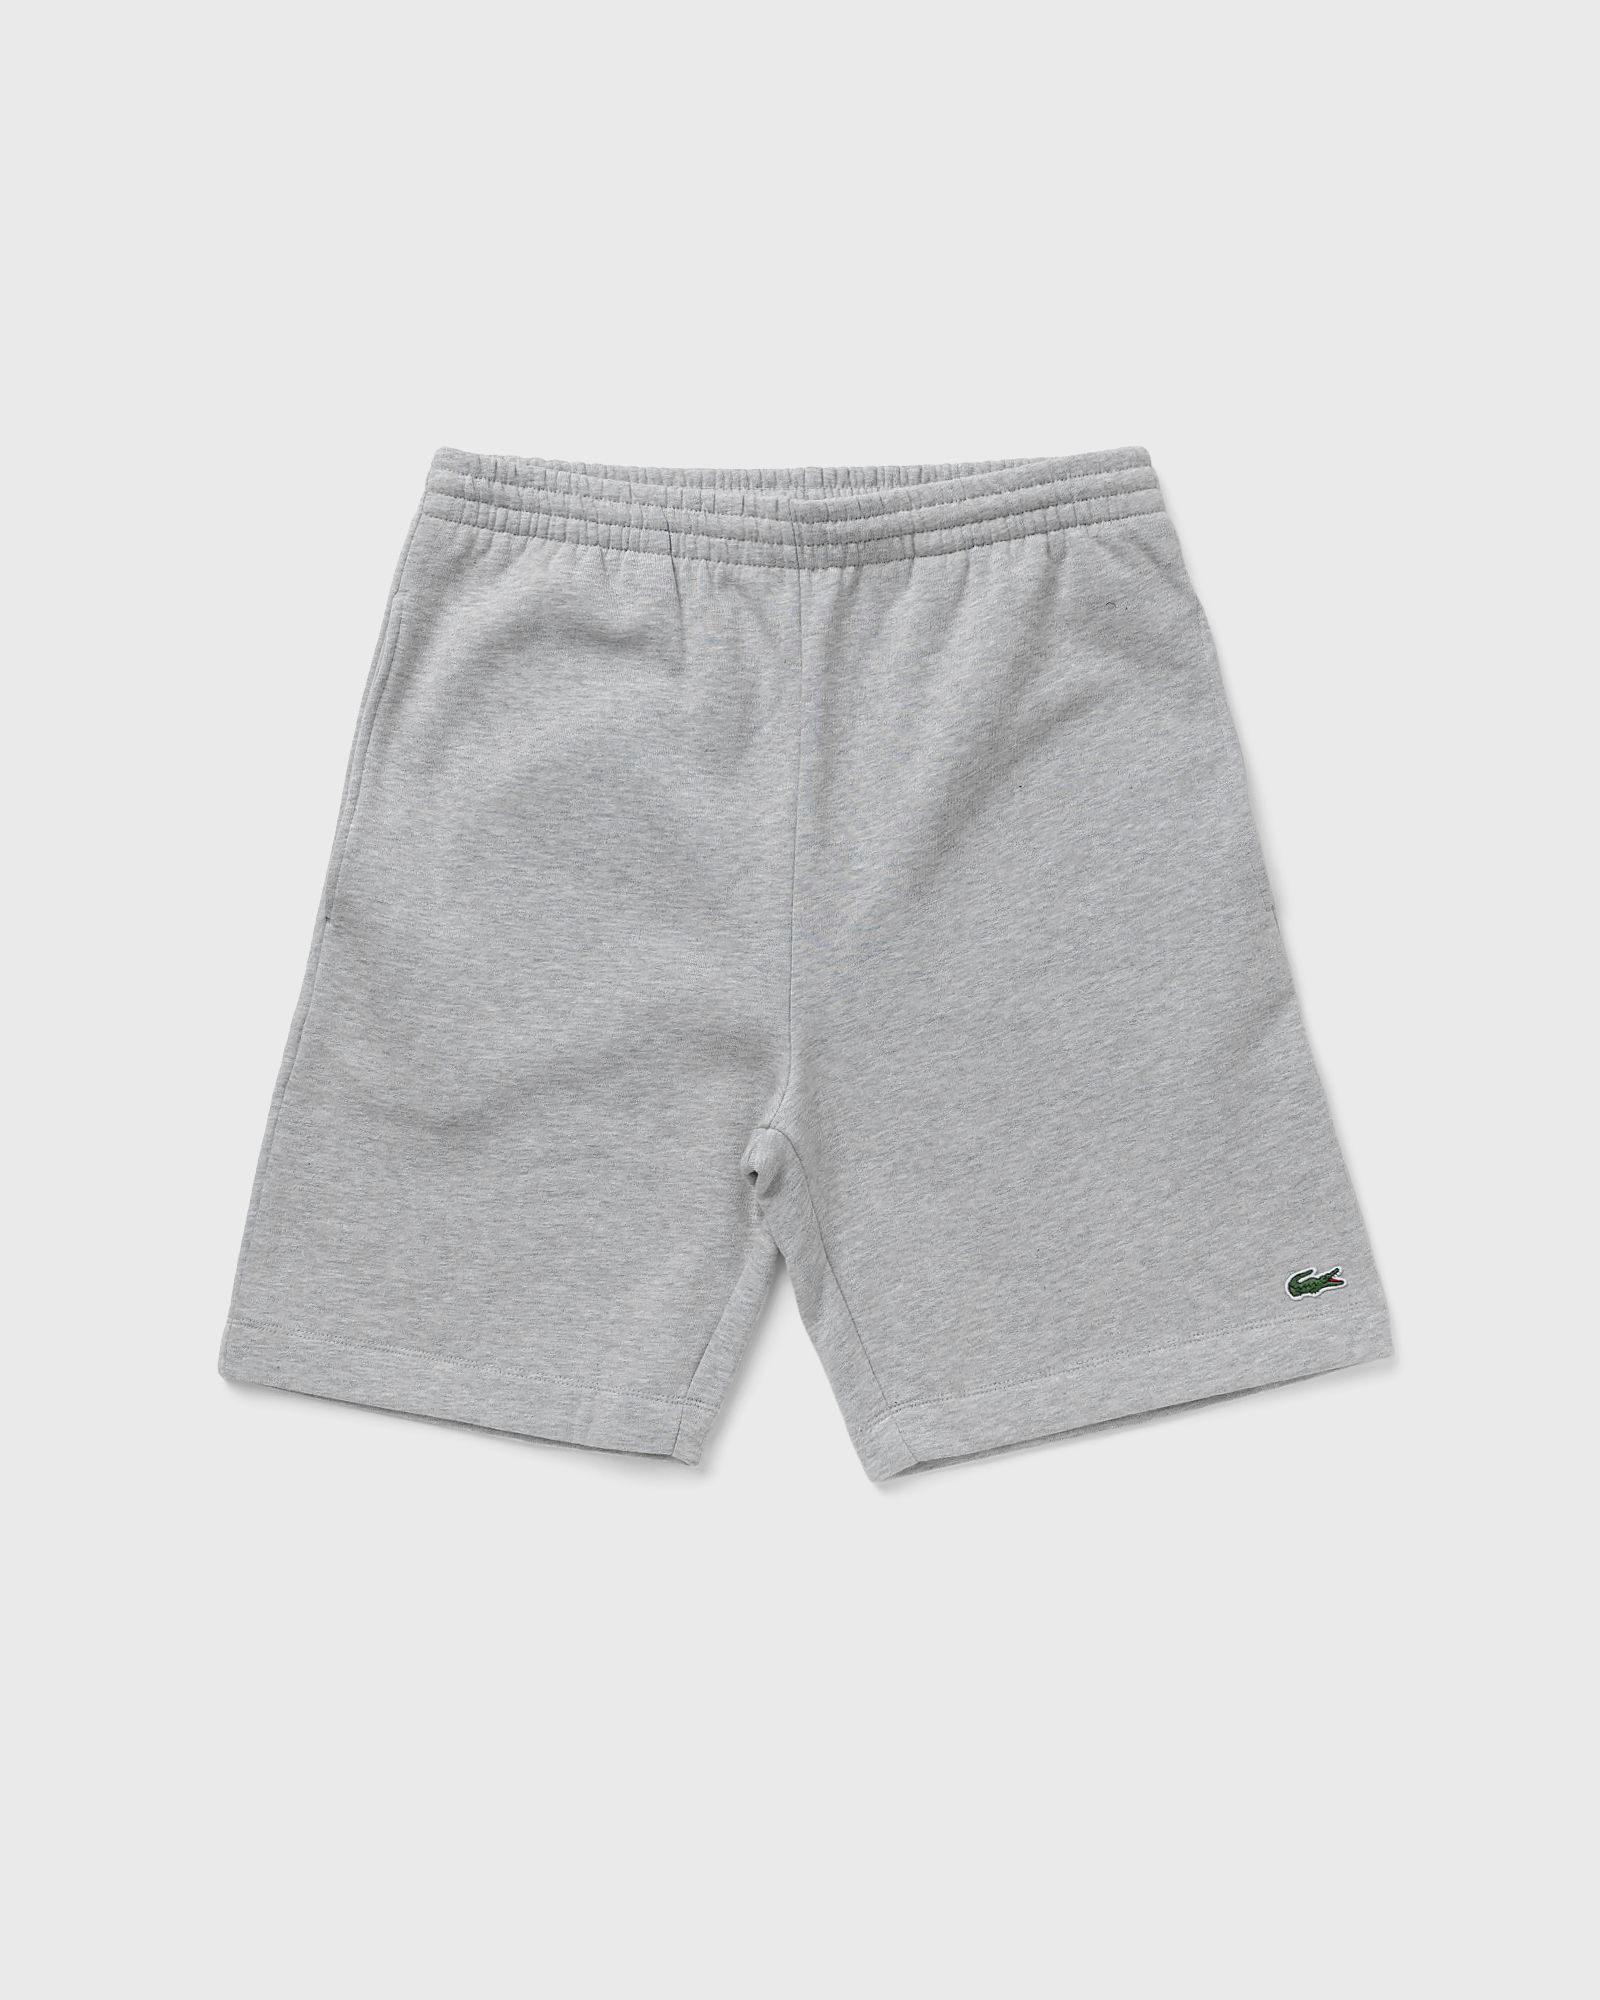 Lacoste - short men sport & team shorts grey in größe:xxl